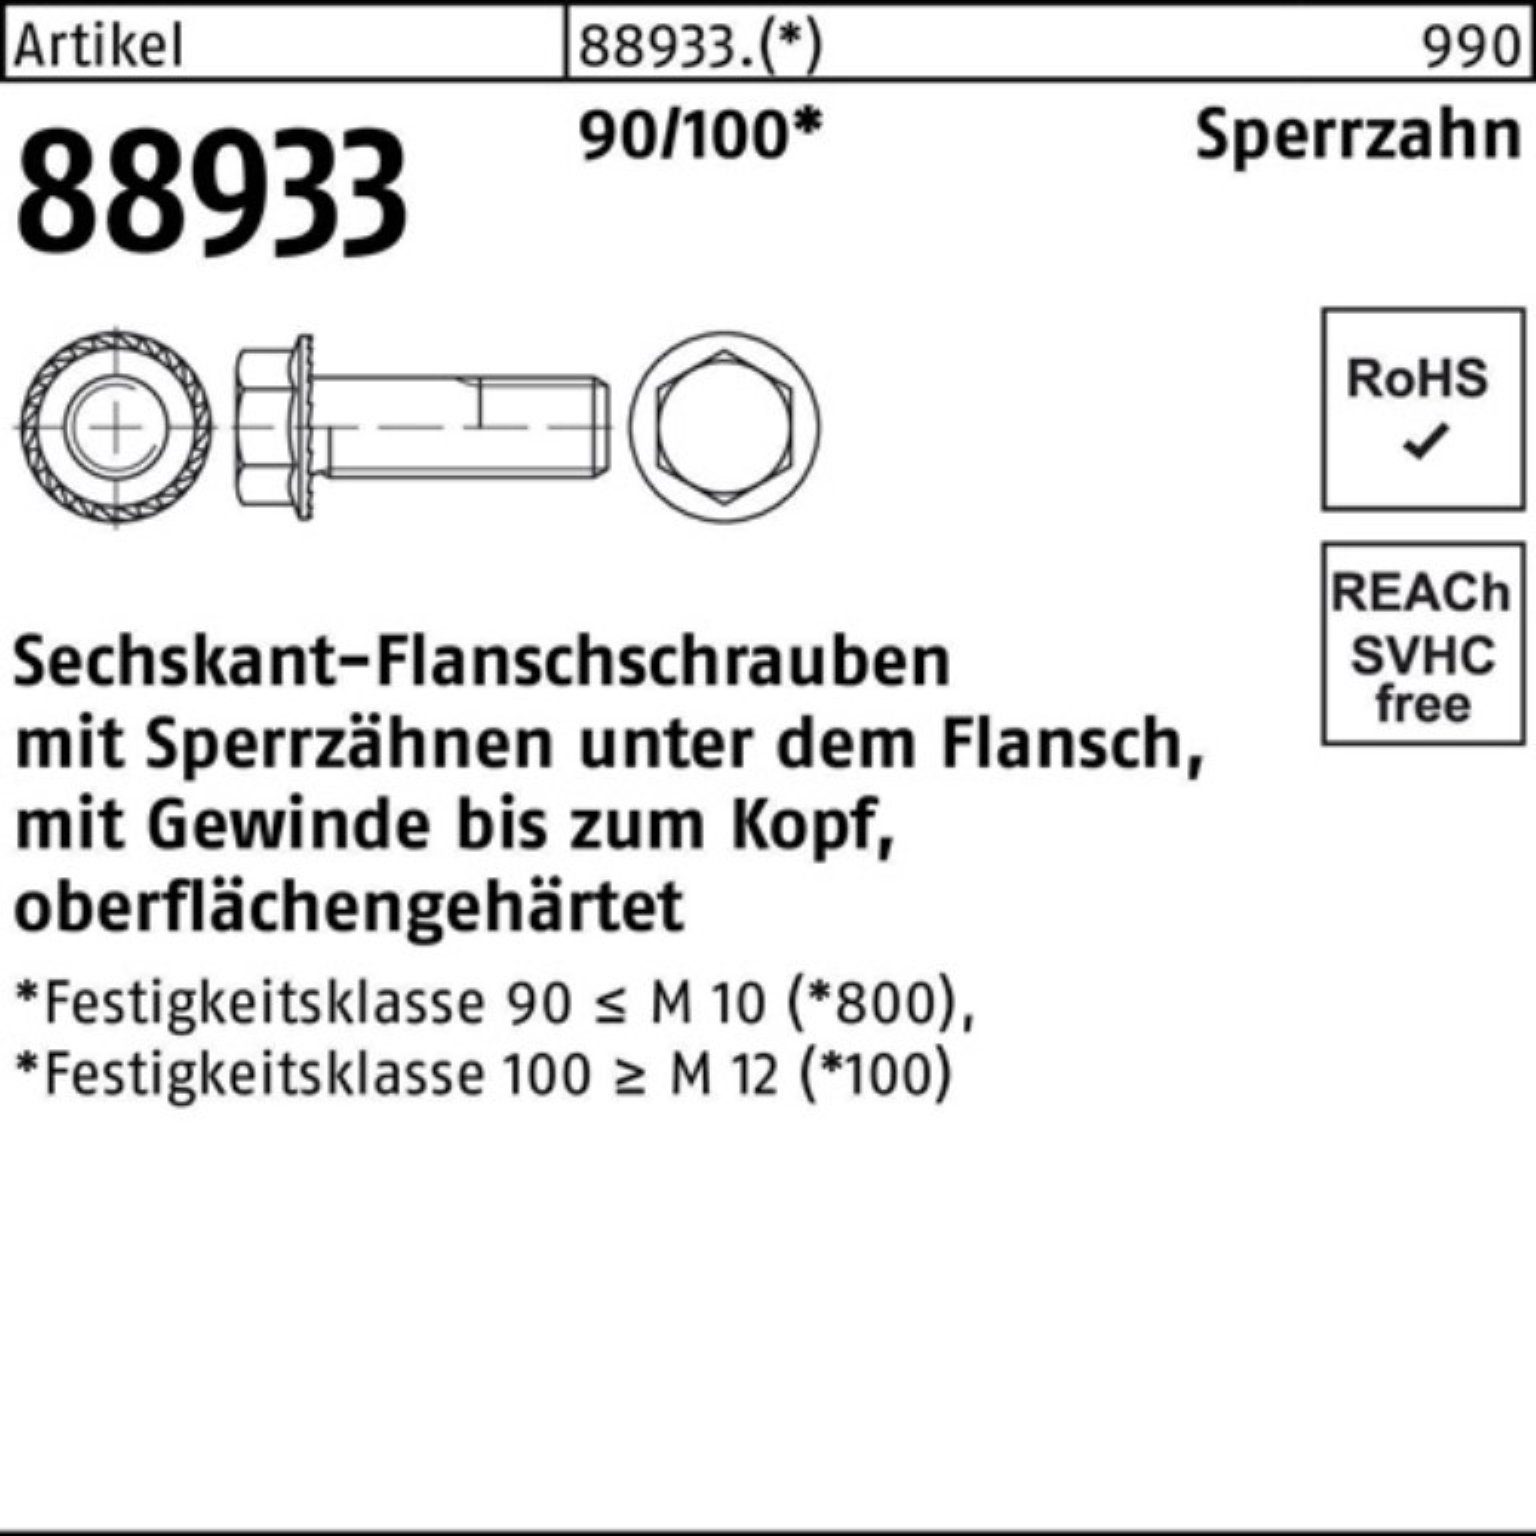 VG Schraube 200er Sechskantflanschschraube Sperrz. 88933 M10x 22 Pack Reyher 90/100 R